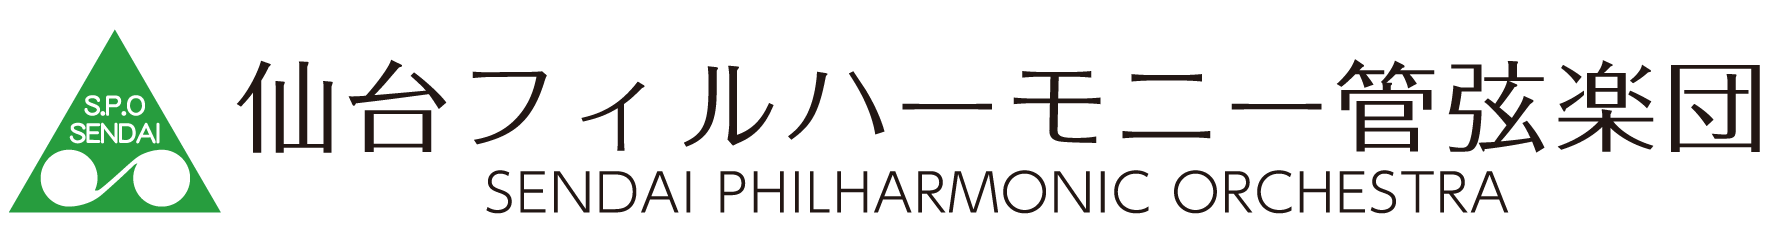 仙台フィルハーモニー管弦楽団のロゴ画像